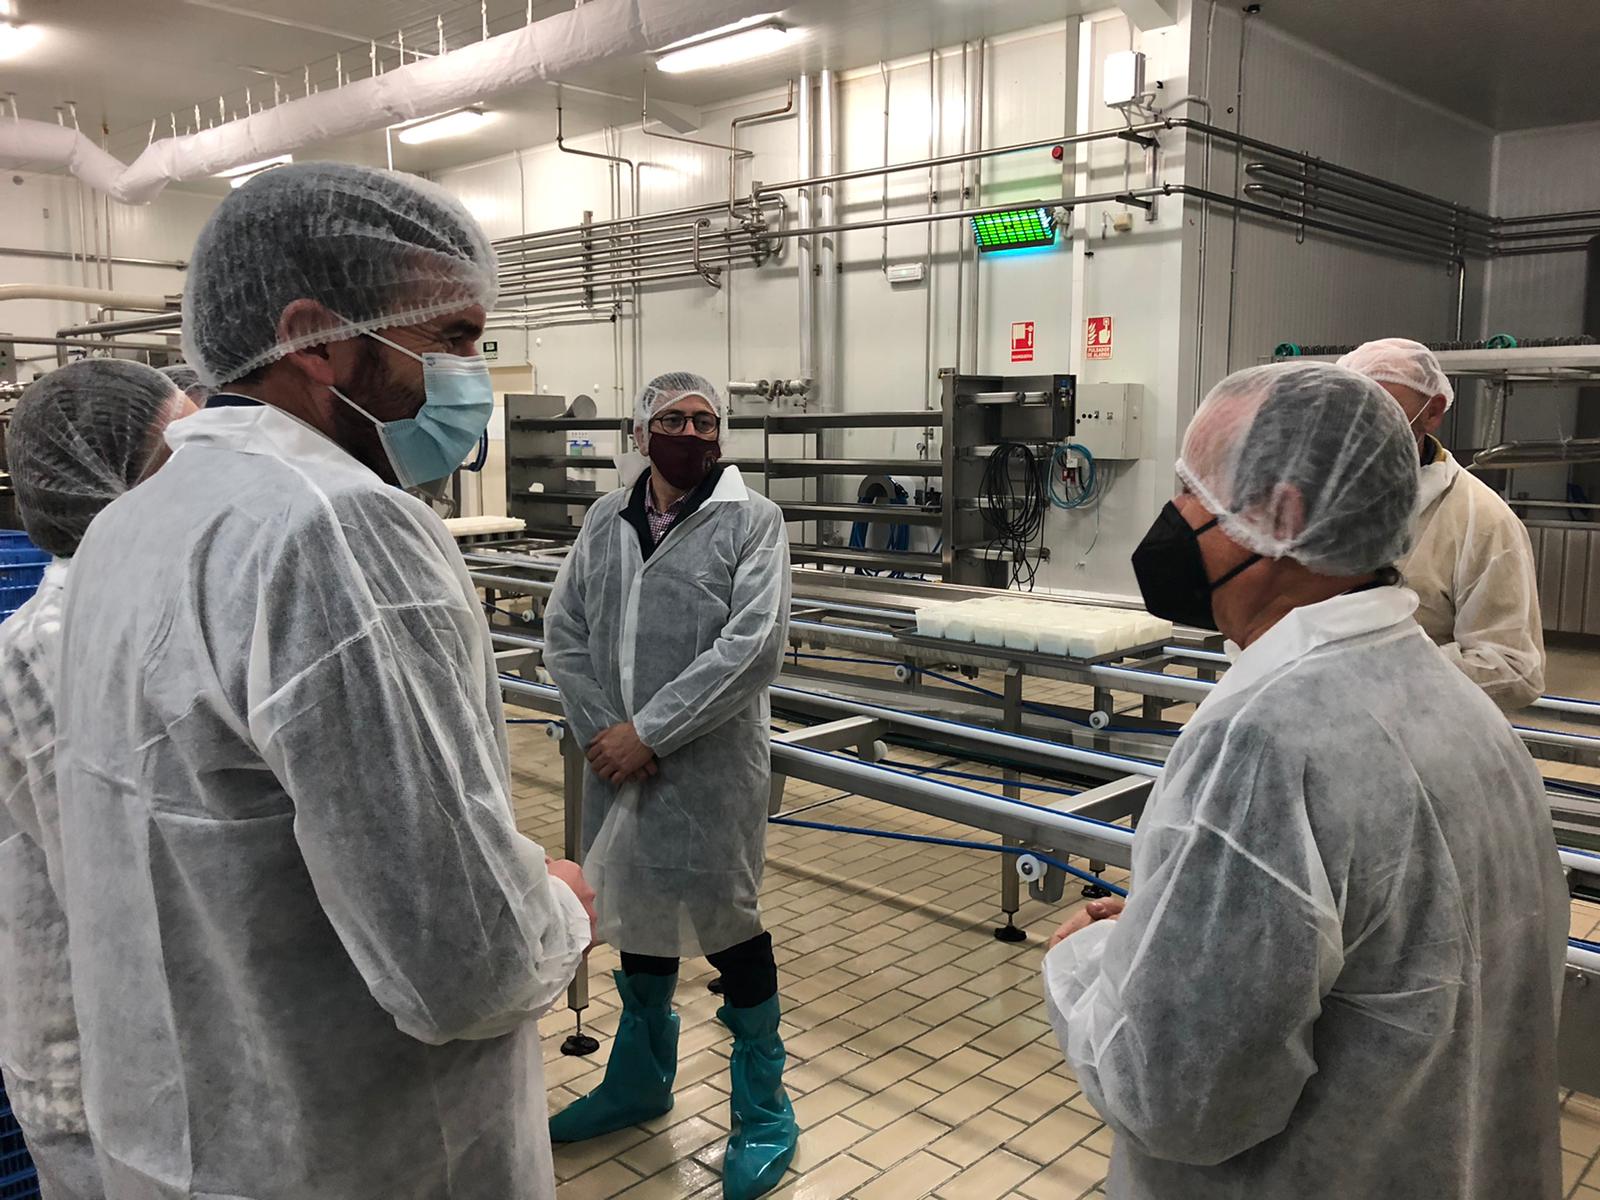 El consejero Antonio Luengo, en primer plano a la izquierda, durante su visita a la fábrica de quesos de Alimer en Lorca